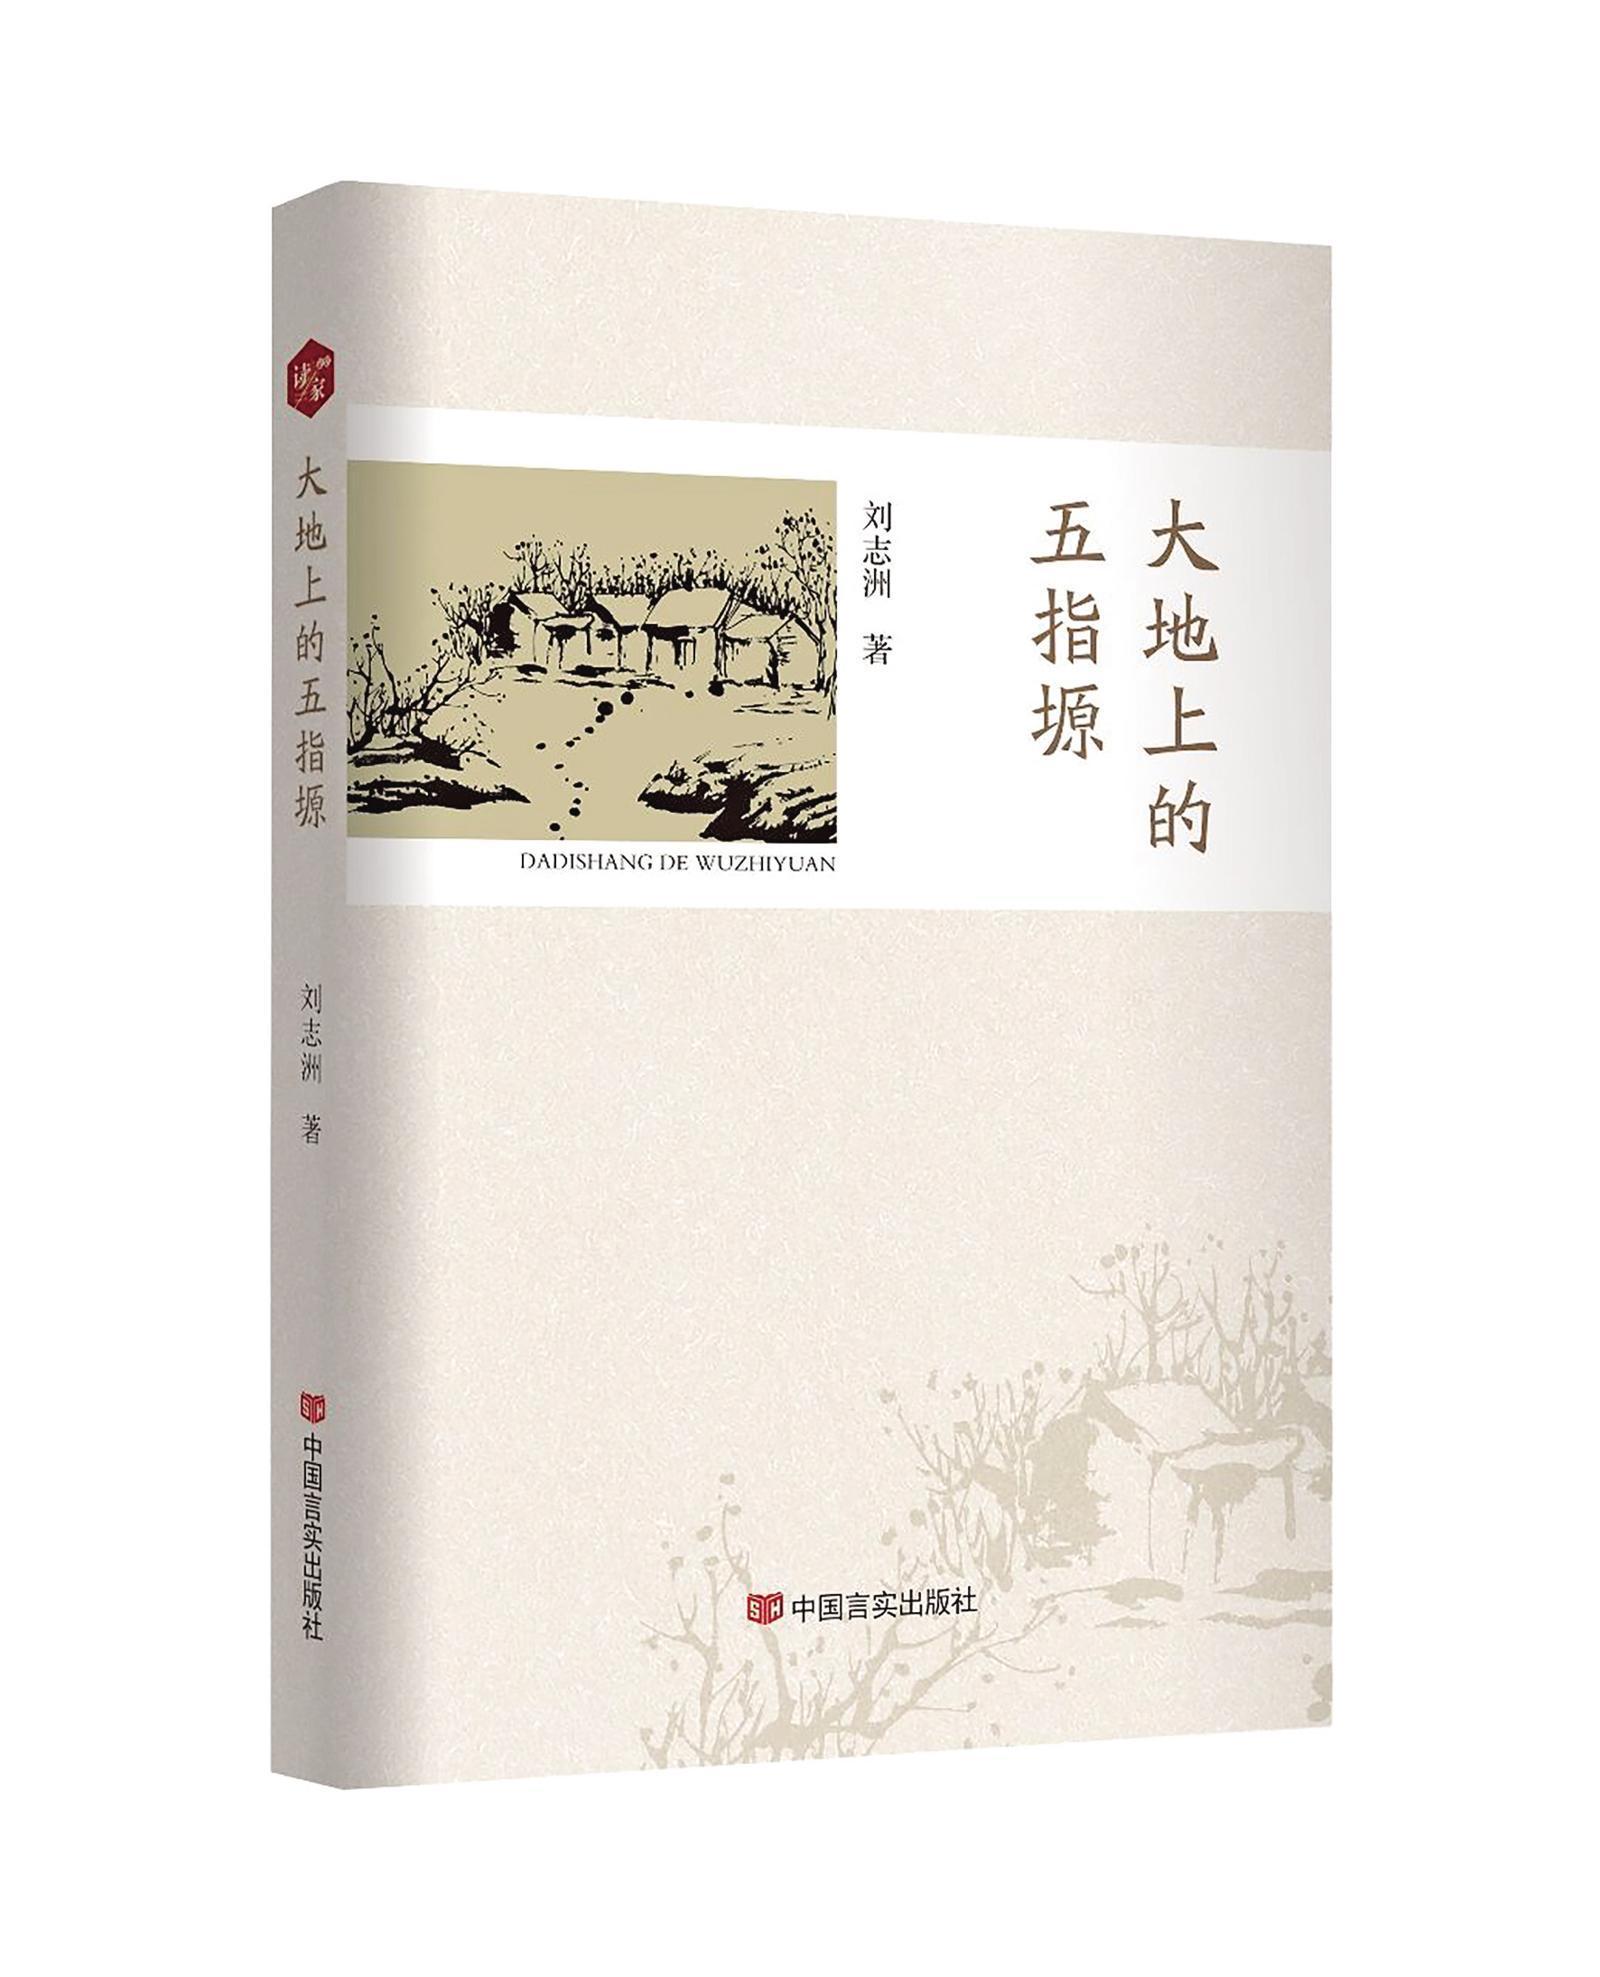 慶陽作家劉志洲散文集 《大地上的五指塬》出版發行